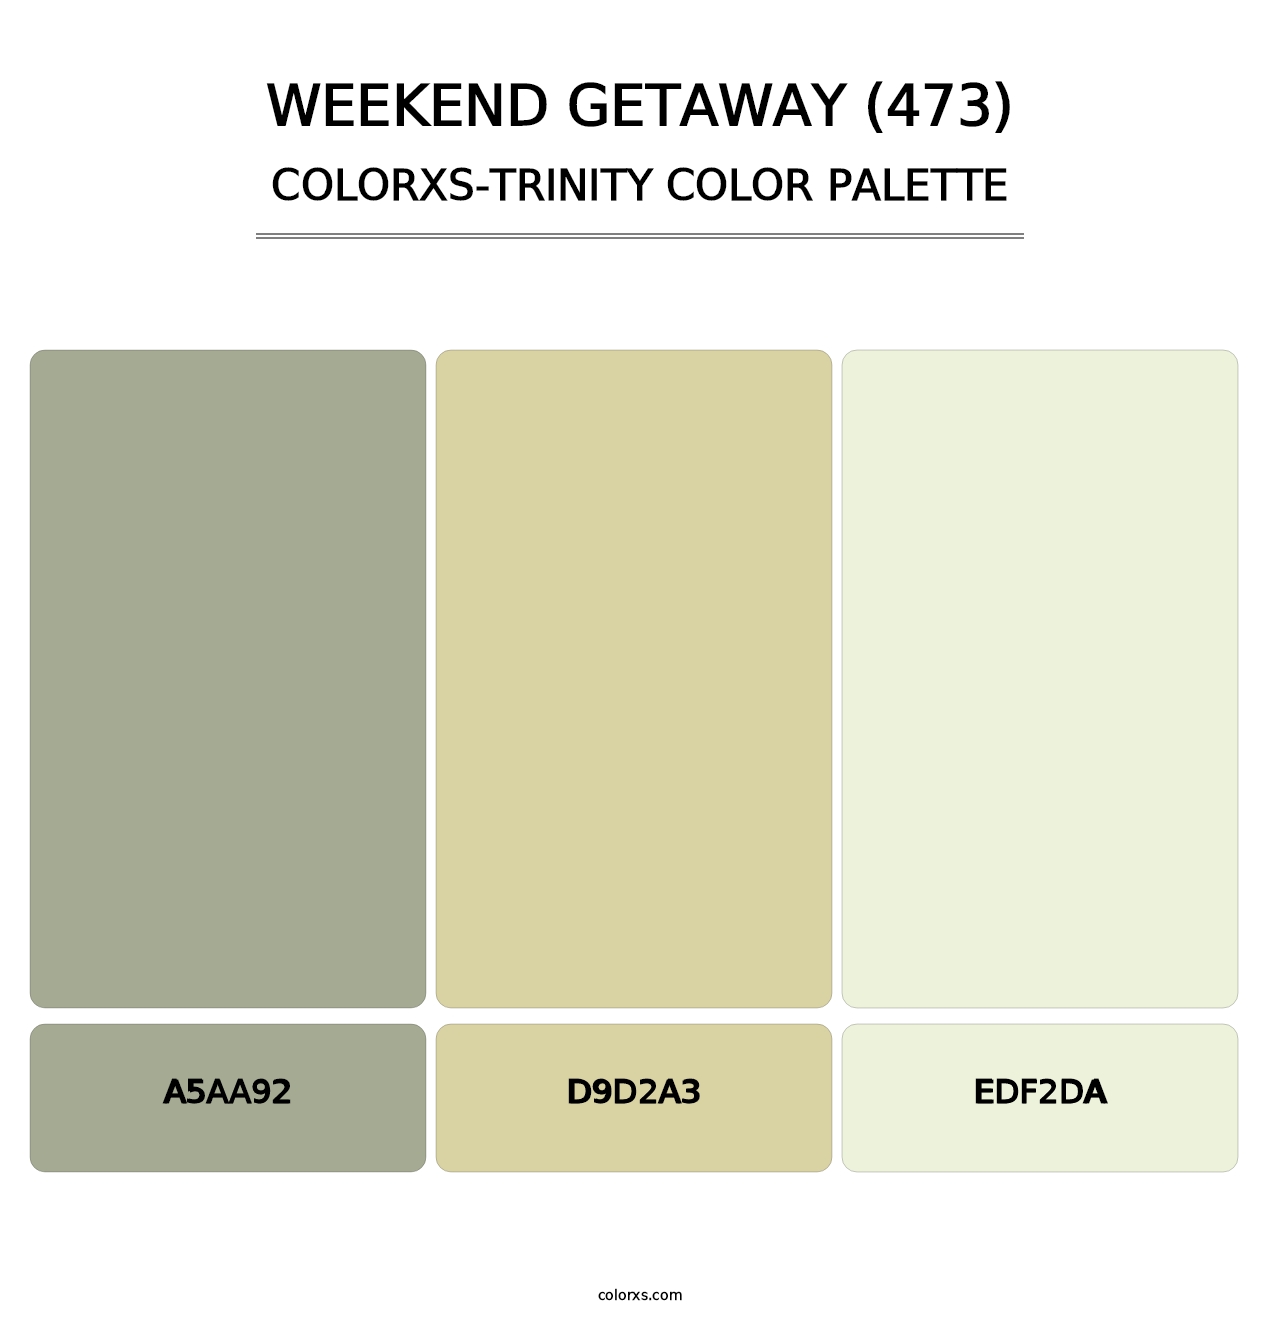 Weekend Getaway (473) - Colorxs Trinity Palette